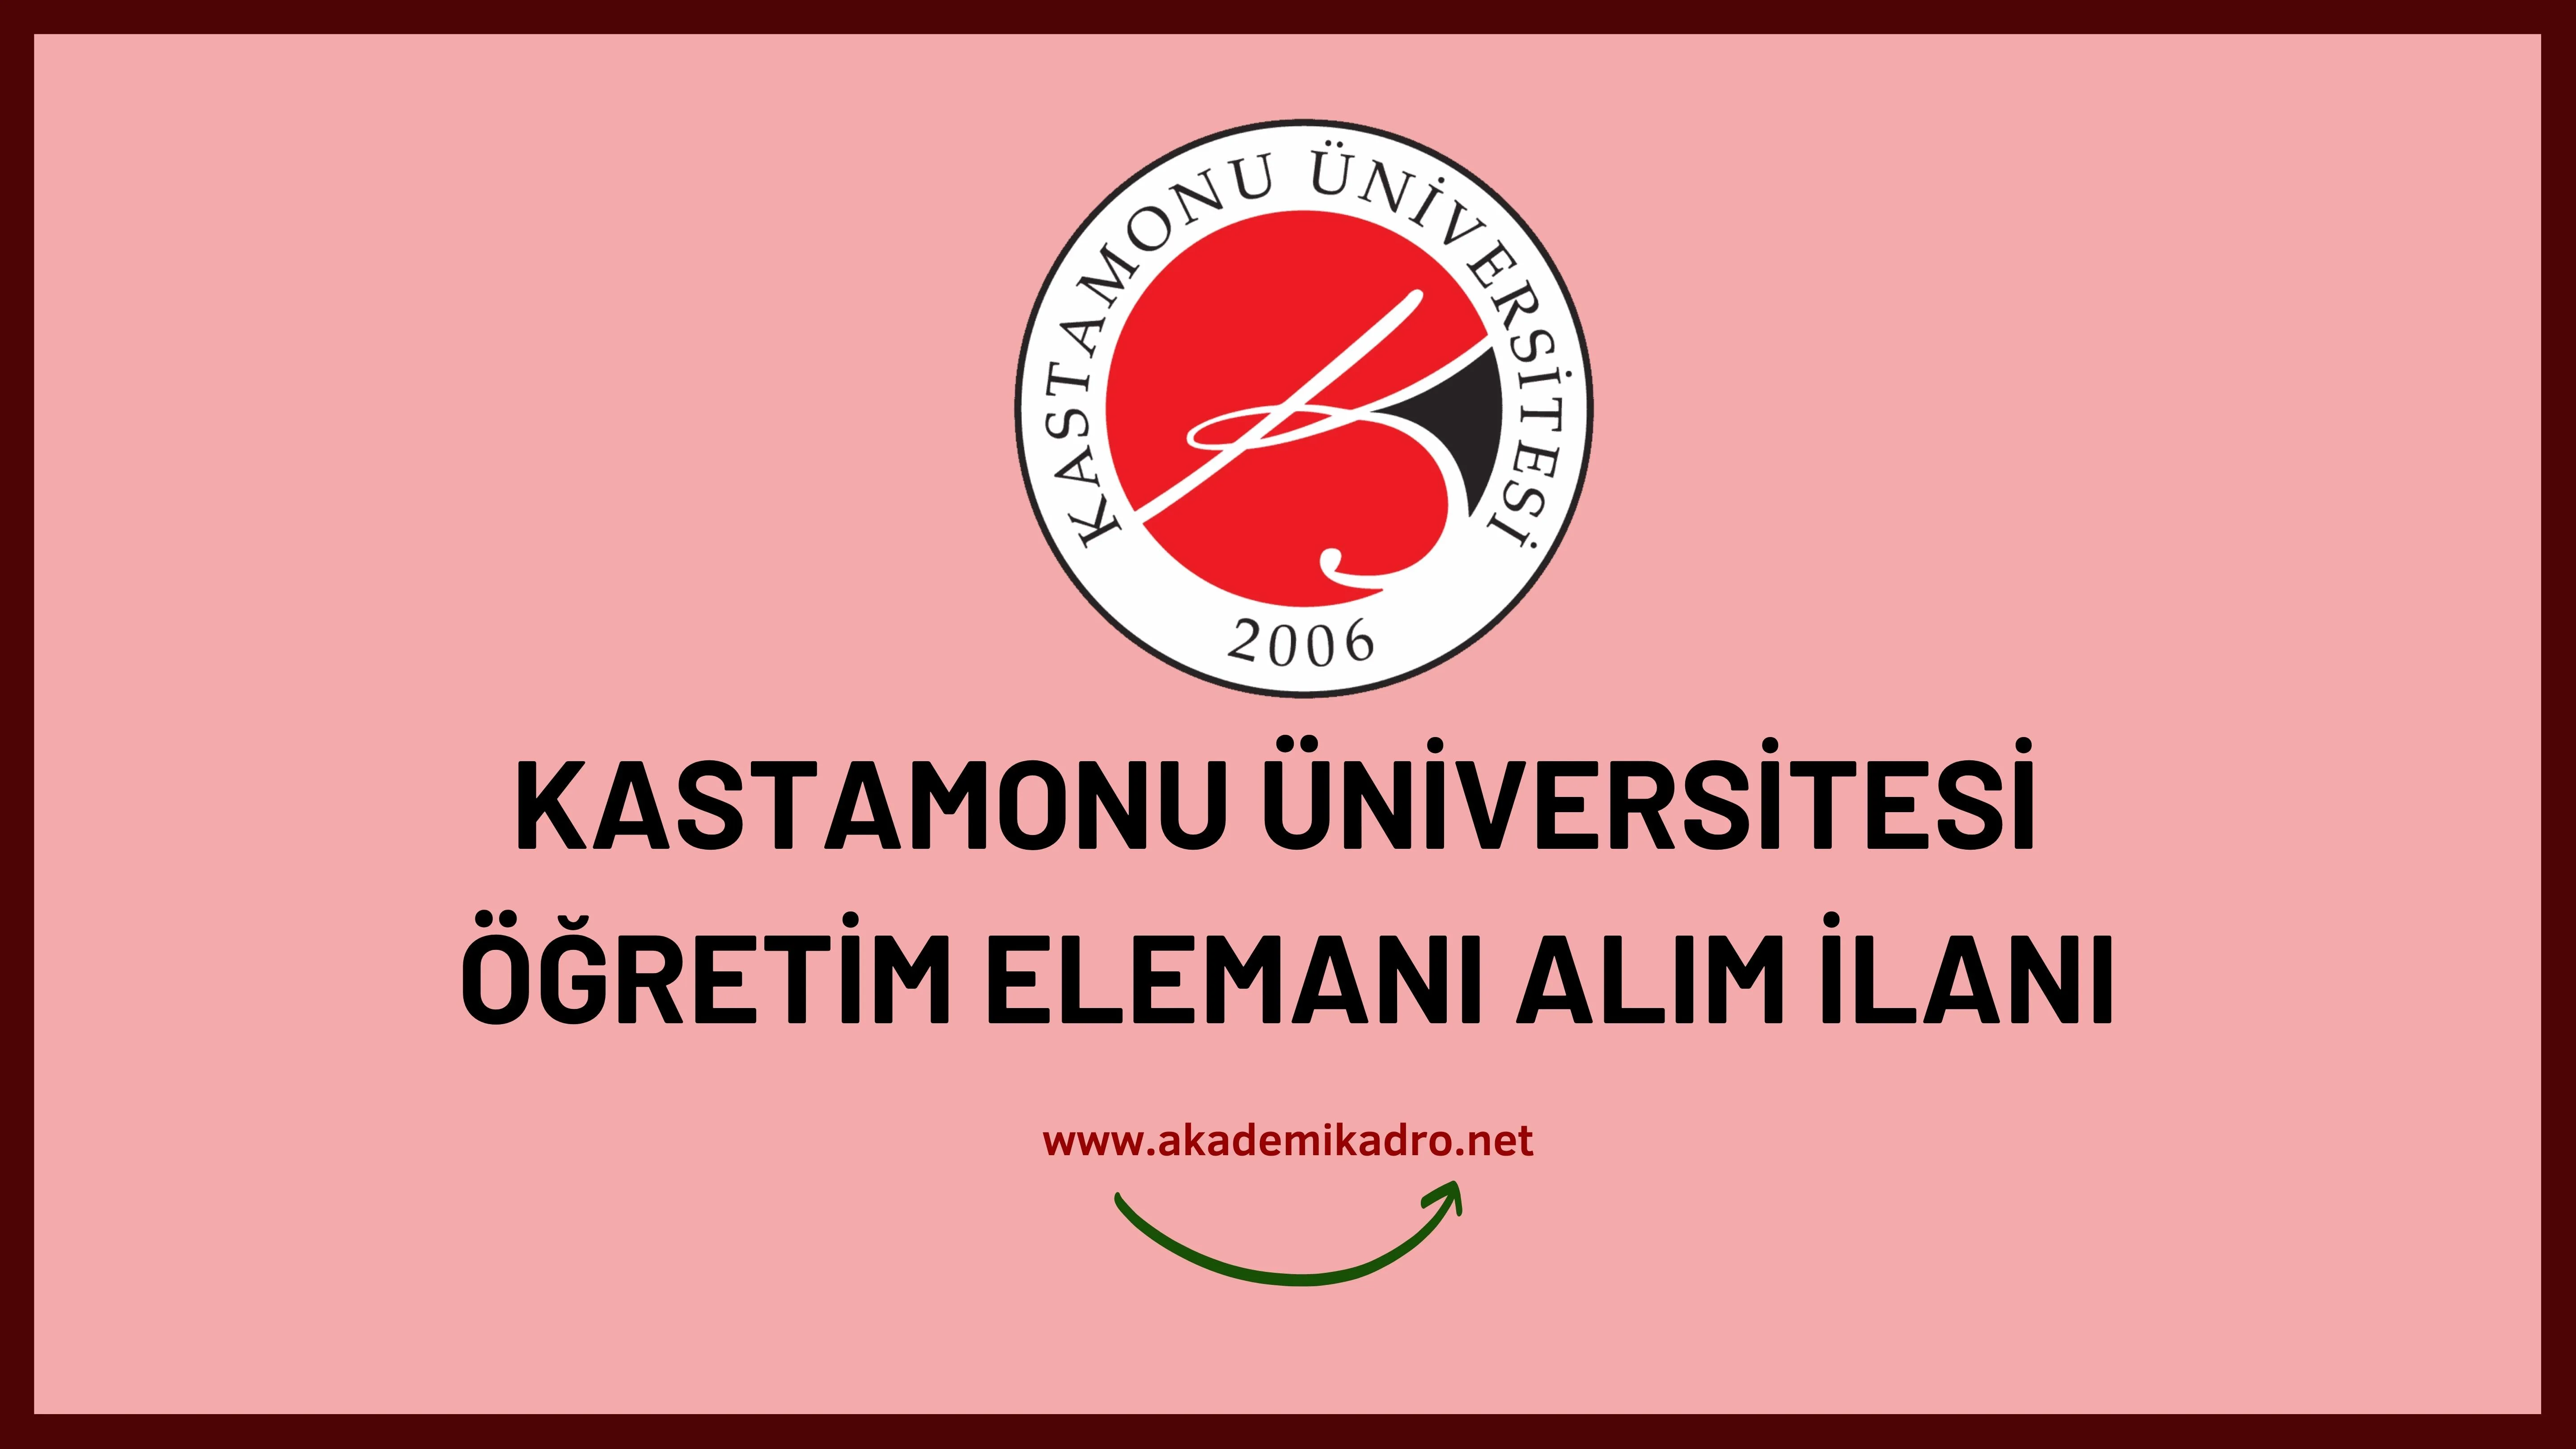 Kastamonu Üniversitesi Öğretim Görevlisi ve Öğretim üyesi olmak üzere 54 Öğretim elemanı alacak.